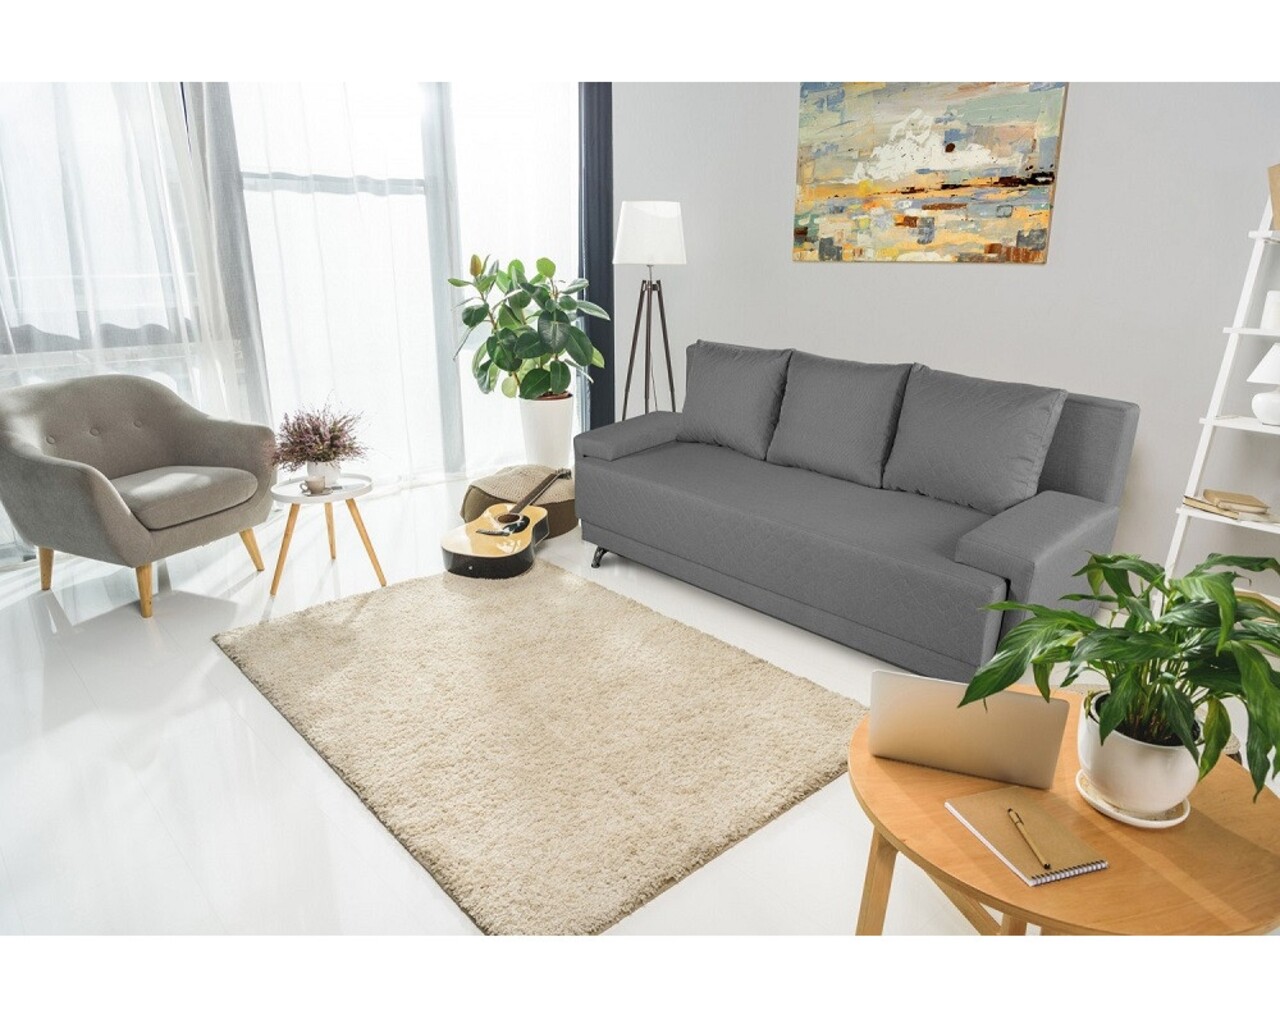 Bedora Napoli Grey kanapéágy, 205x90x86 cm, tároló dobozzal